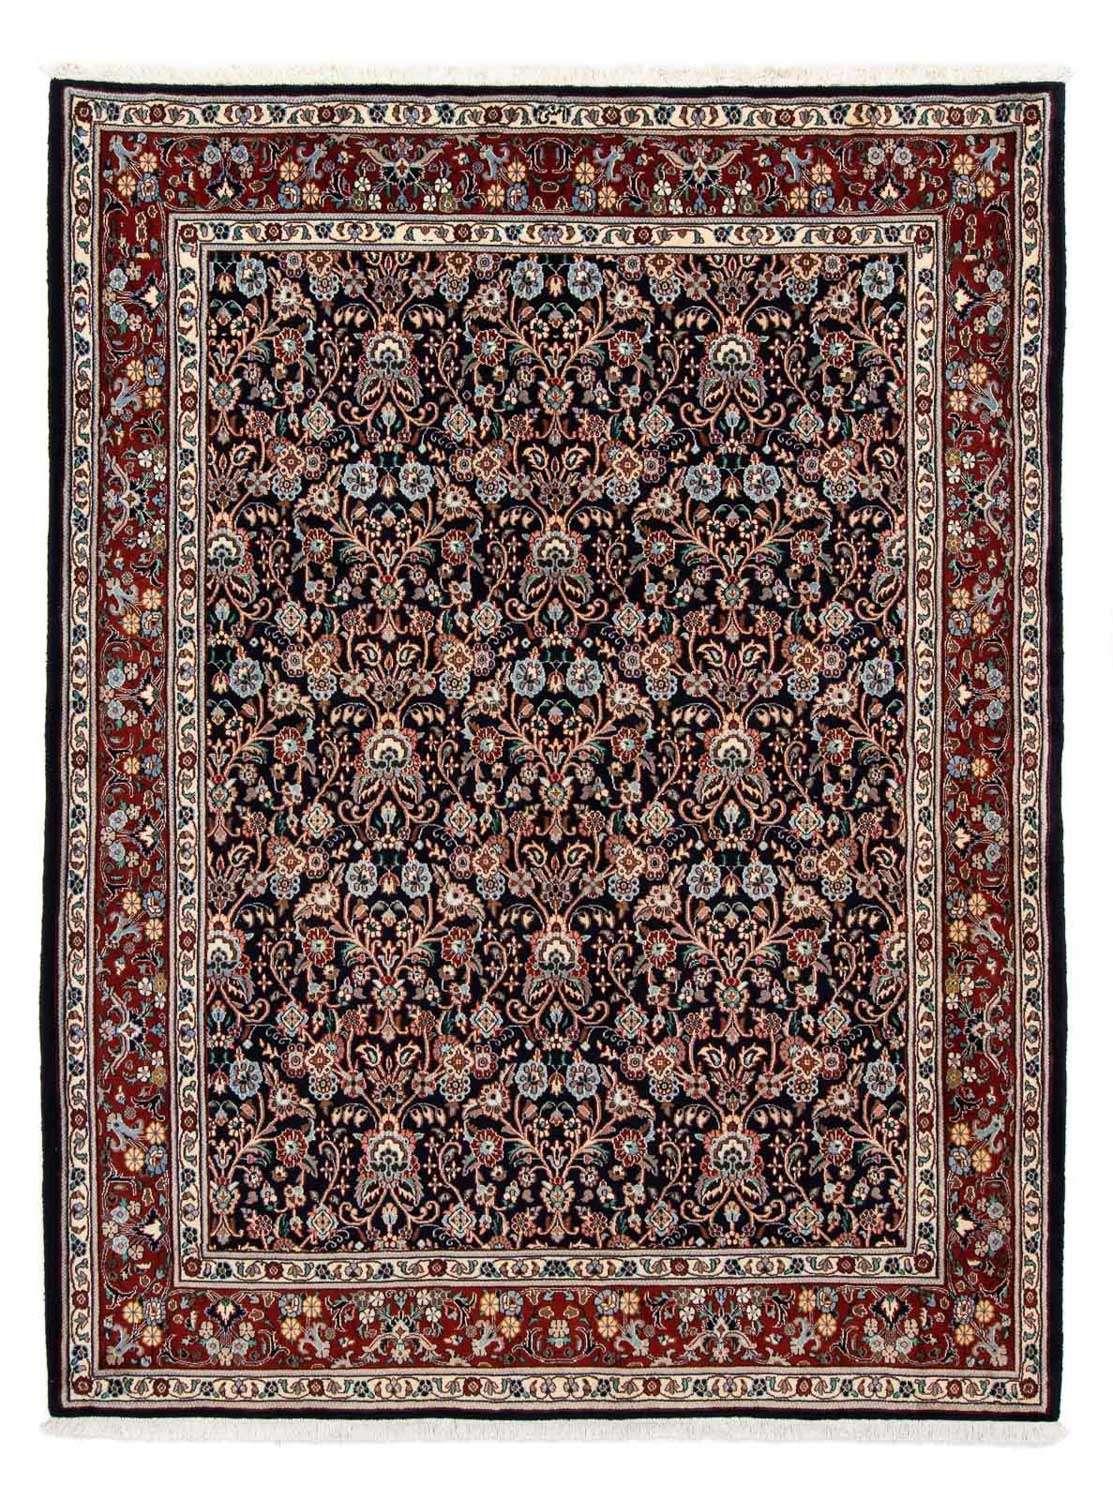 Persisk matta - Classic - 230 x 180 cm - mörkblå